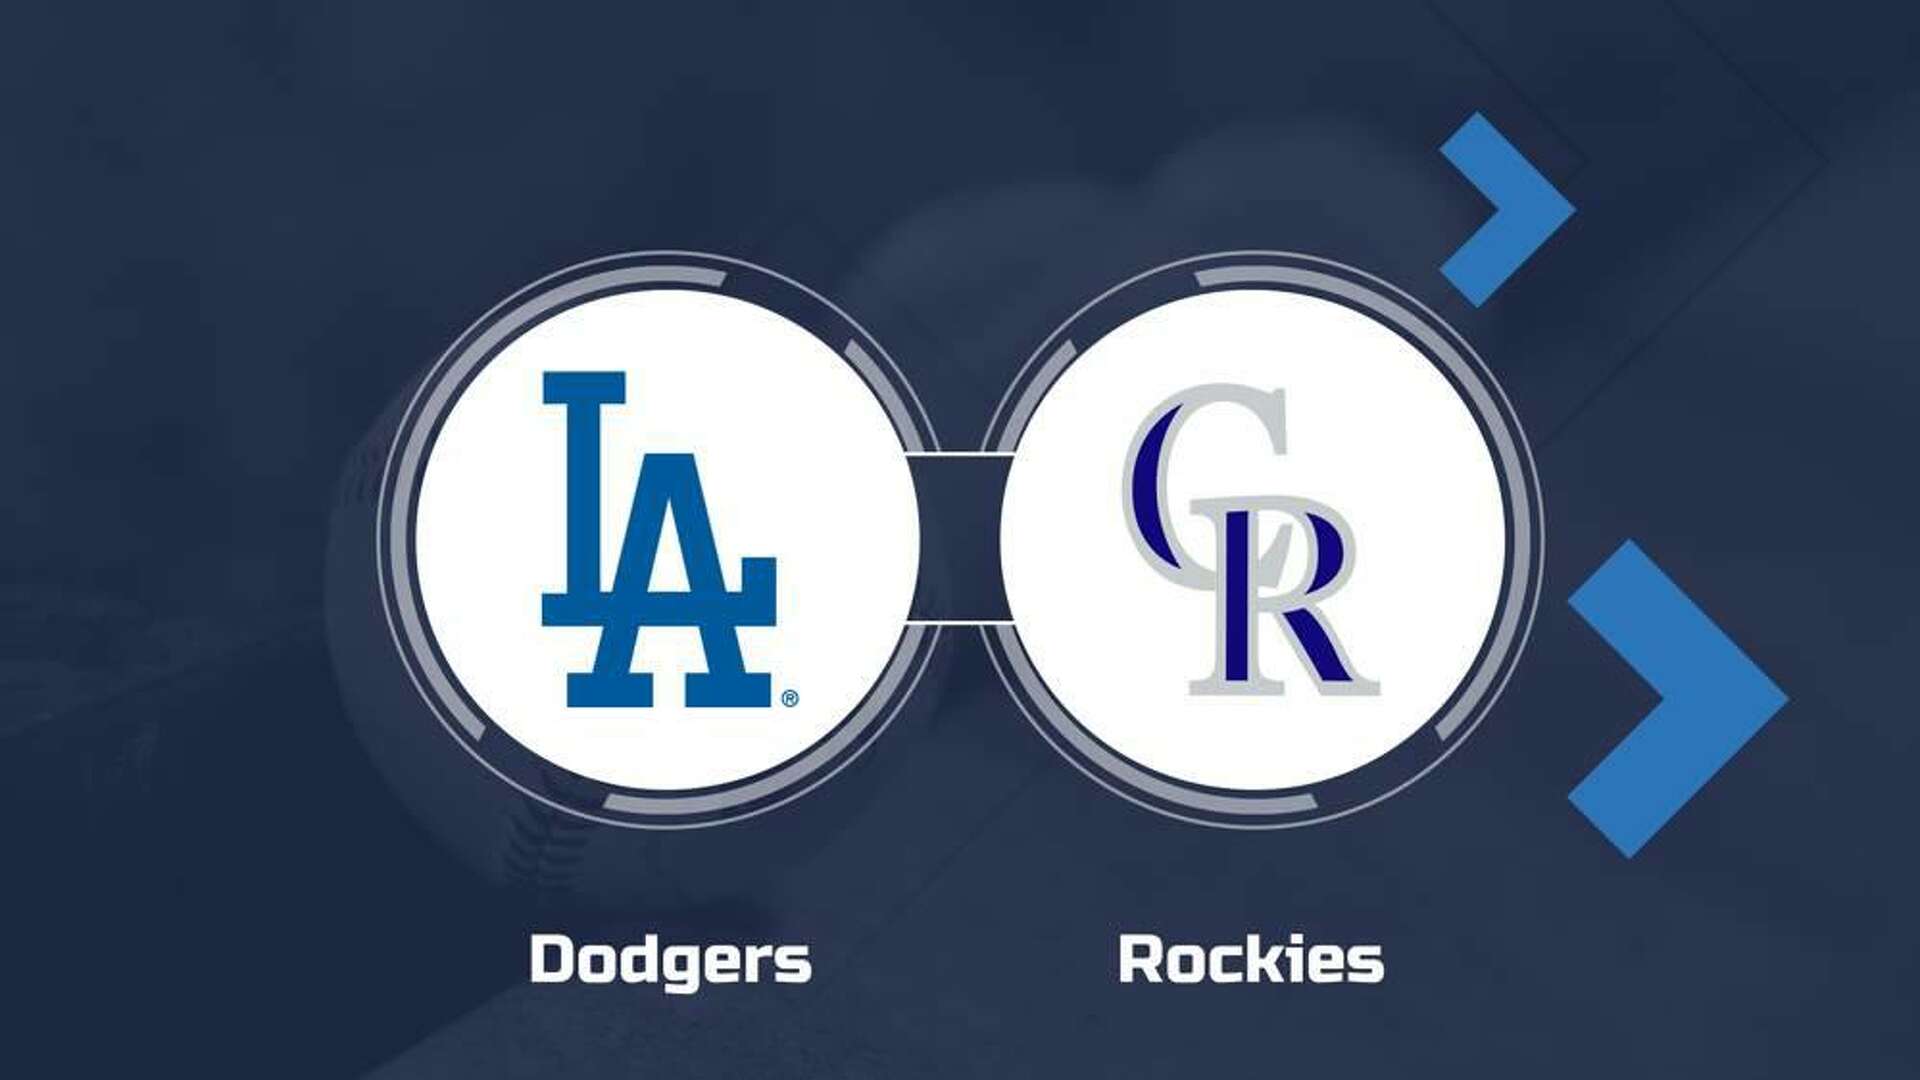 Dodgers vs rockies prediction